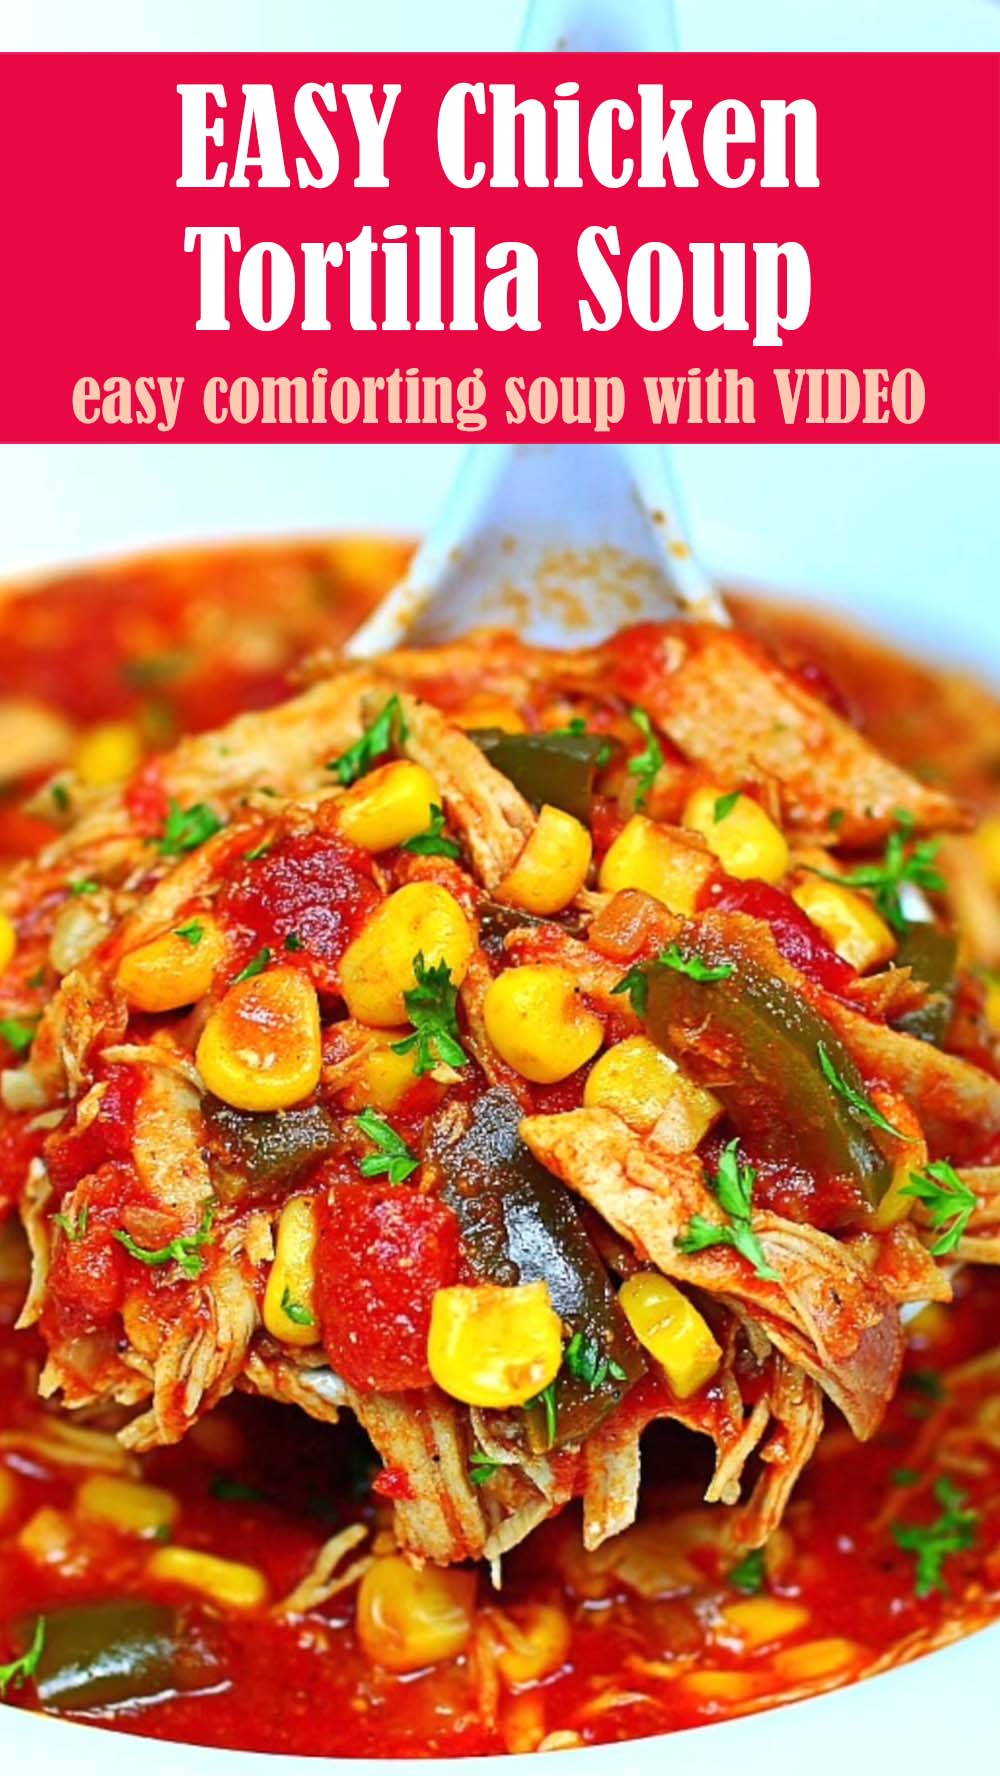 EASY Chicken Tortilla Soup Recipe